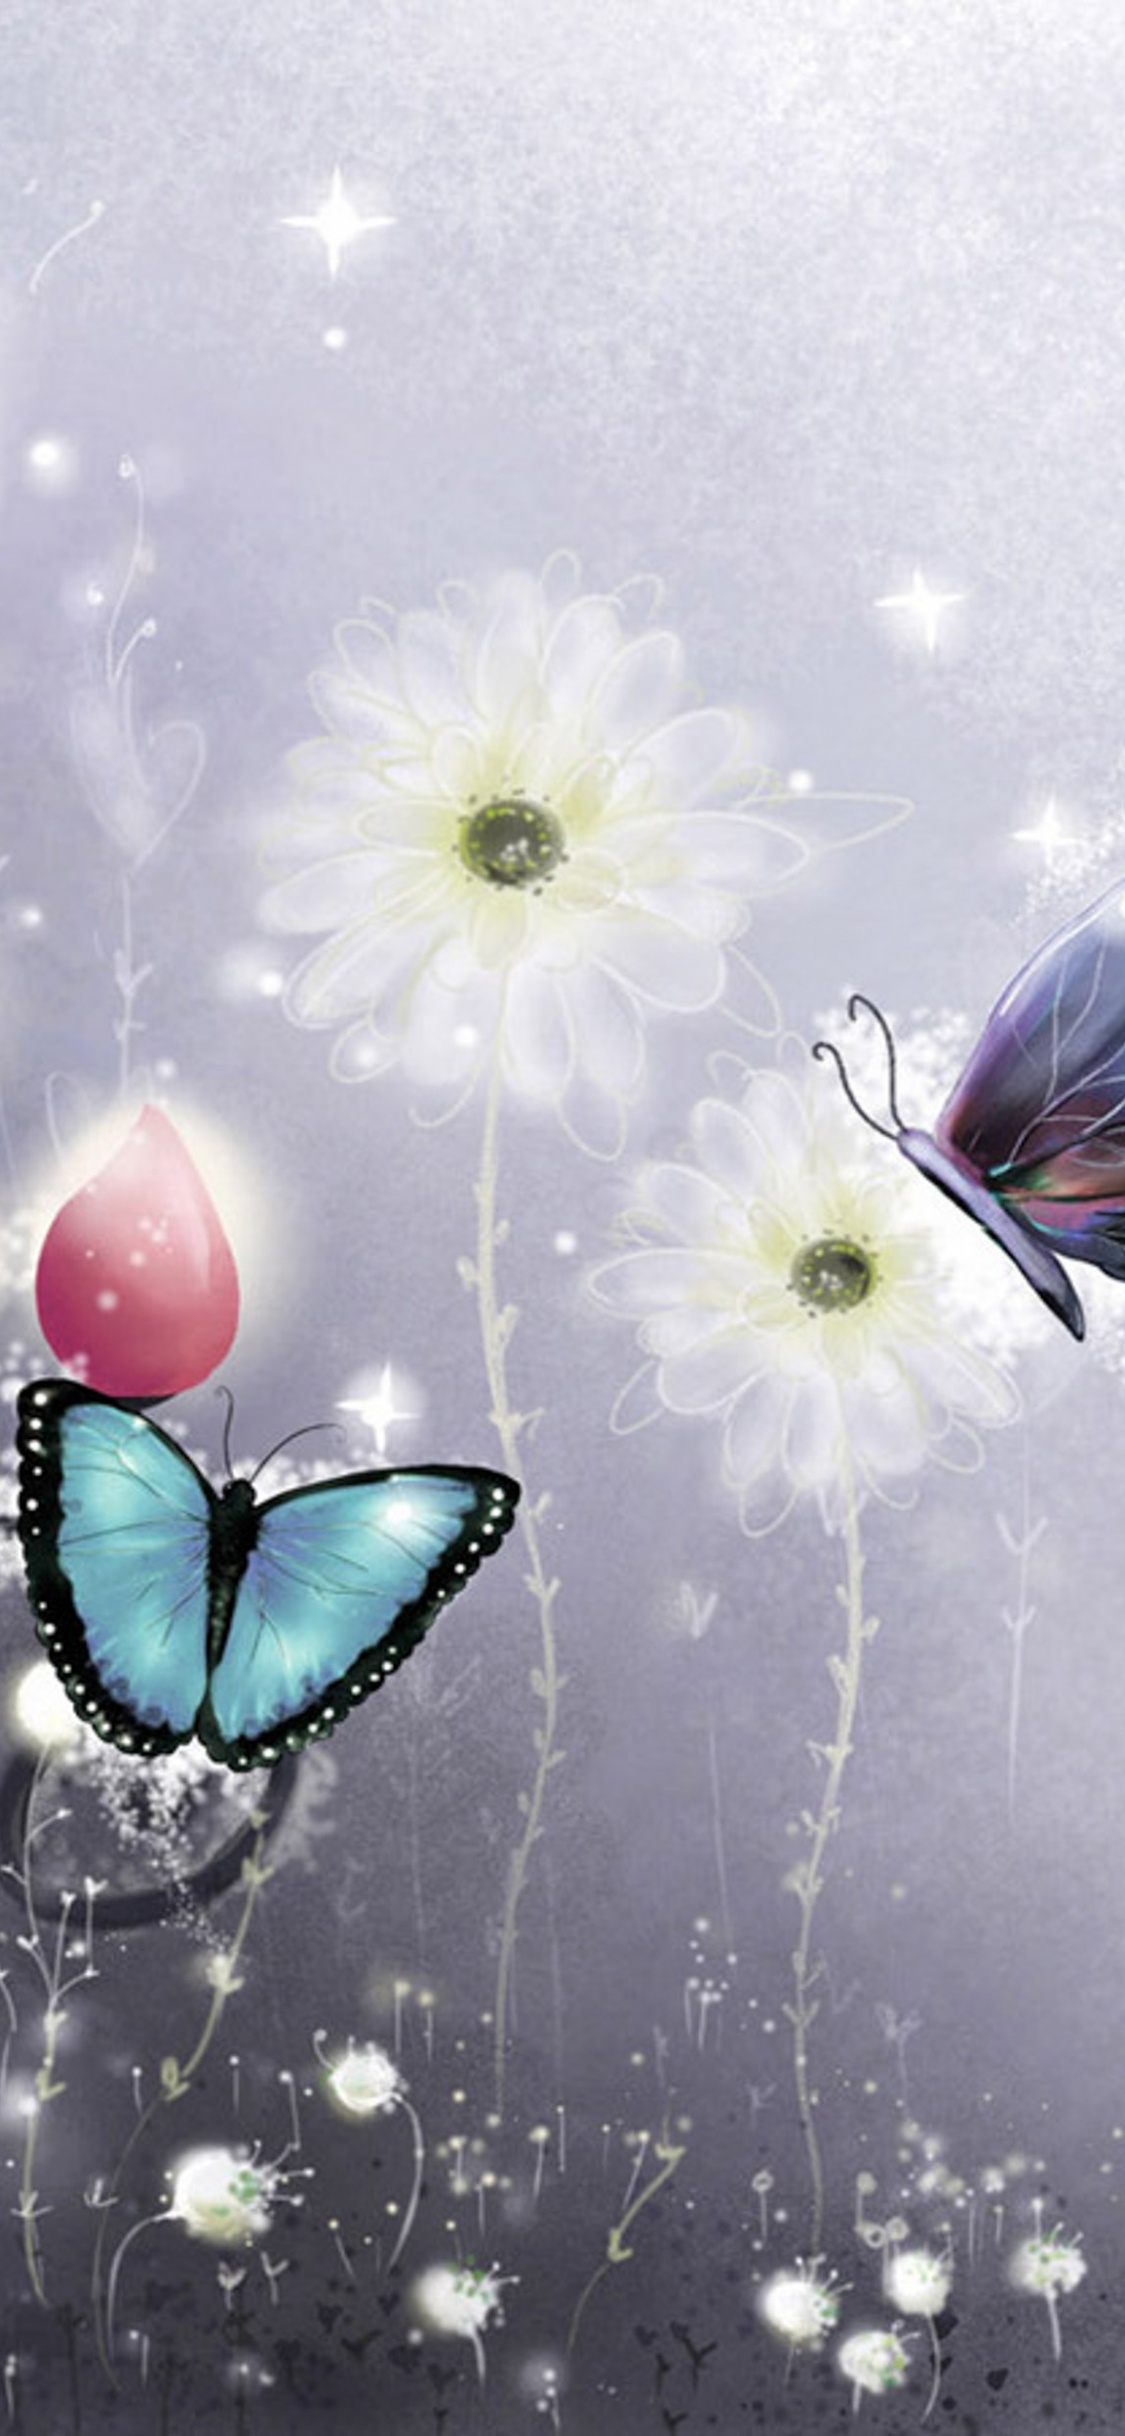 飞蛾和蝴蝶, 图形设计, 翼, 昆虫, 天空 壁纸 1125x2436 允许